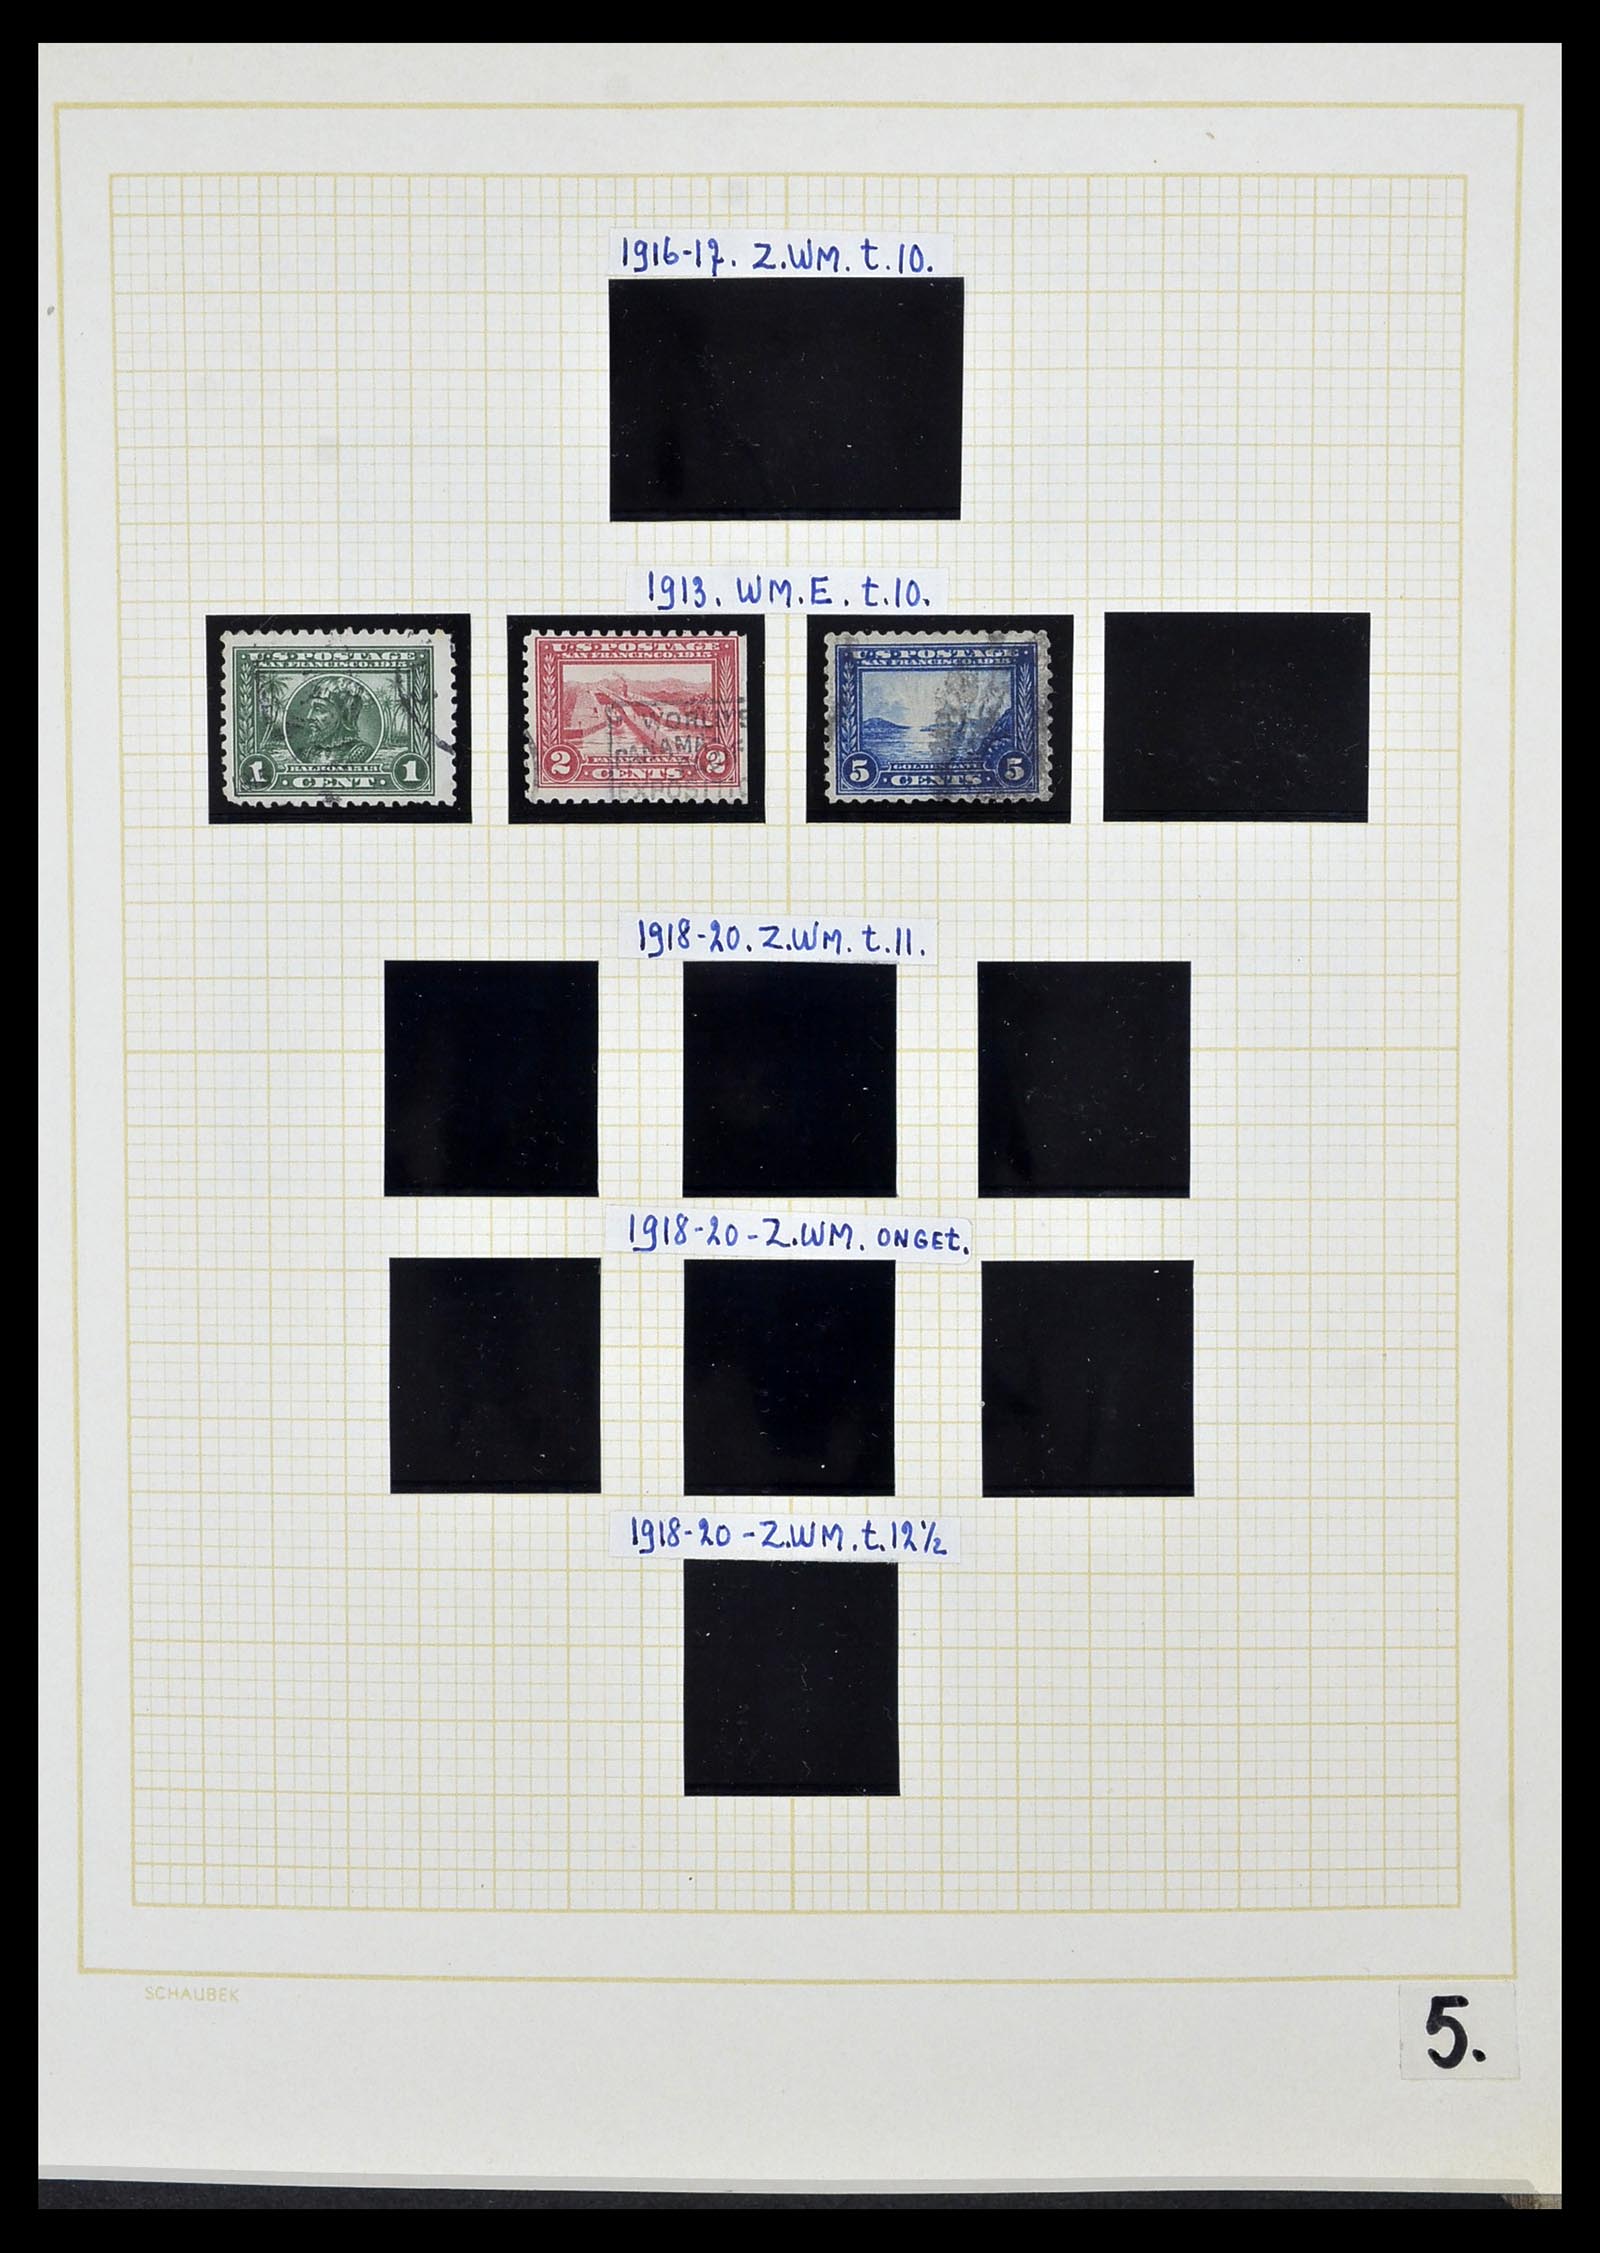 34525 019 - Stamp Collection 34525 USA 1851-1980.